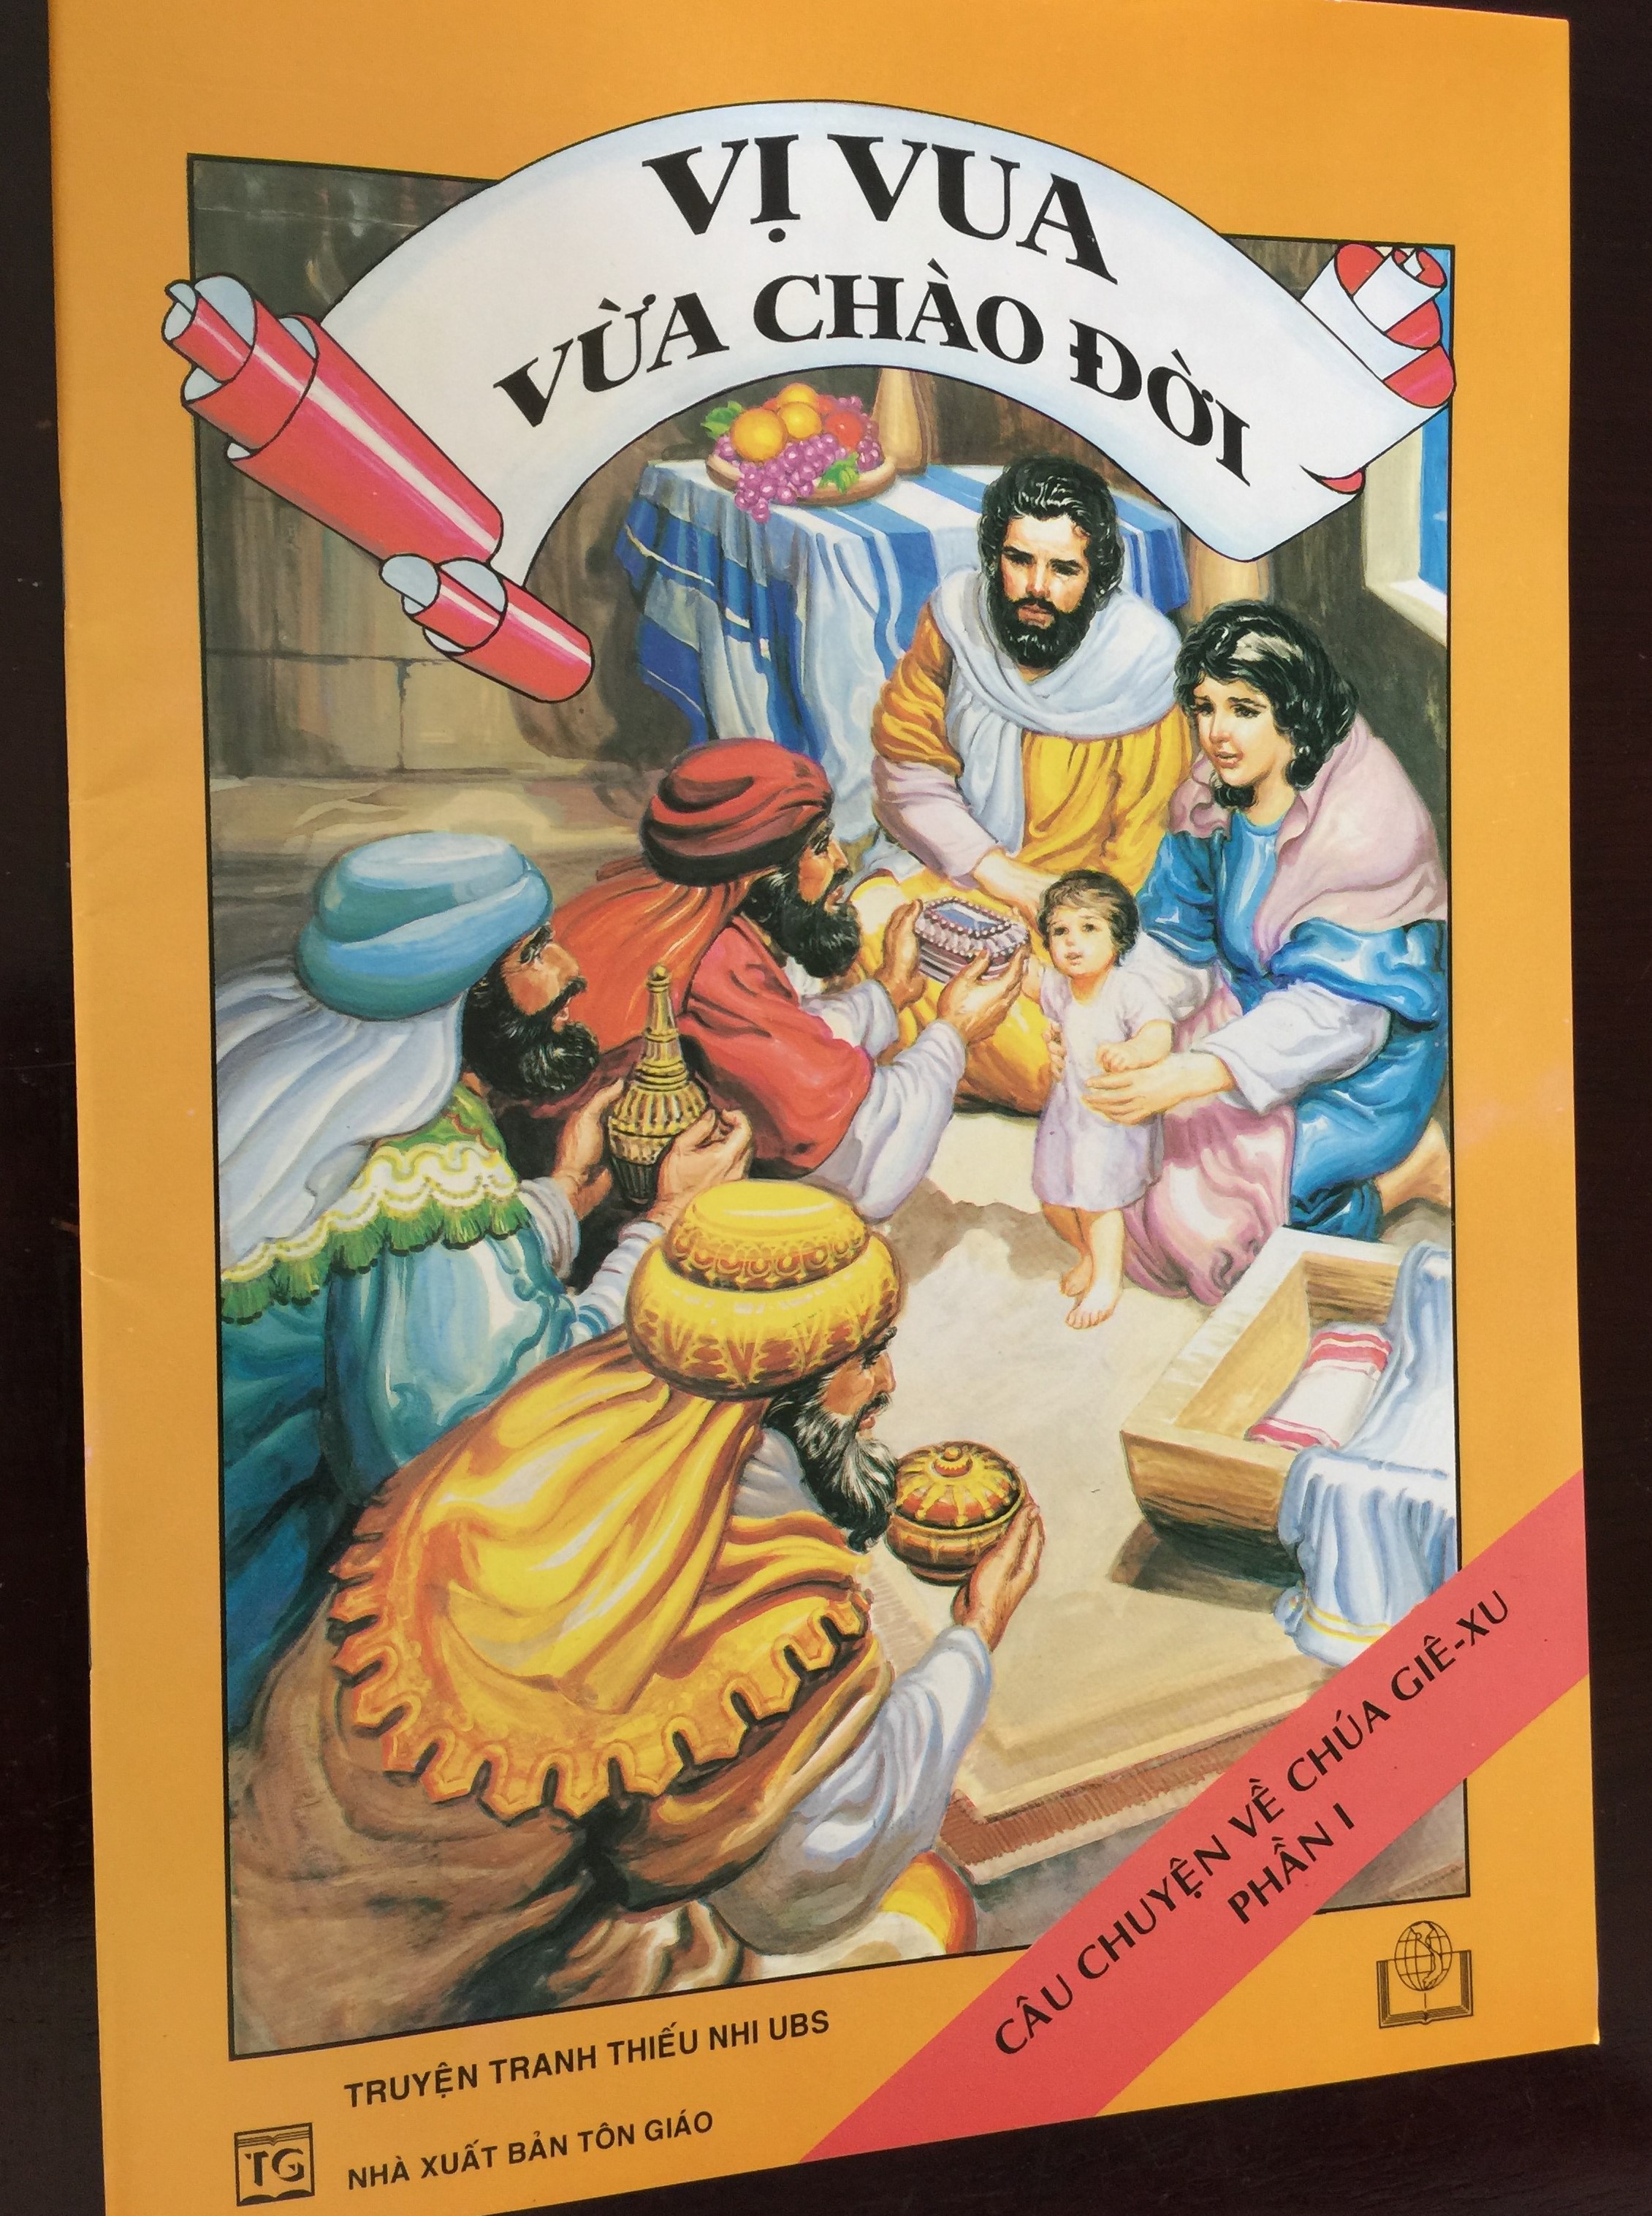 Vi Vua Vua Chao đoi - The Story of Jesus Christ Part I 1